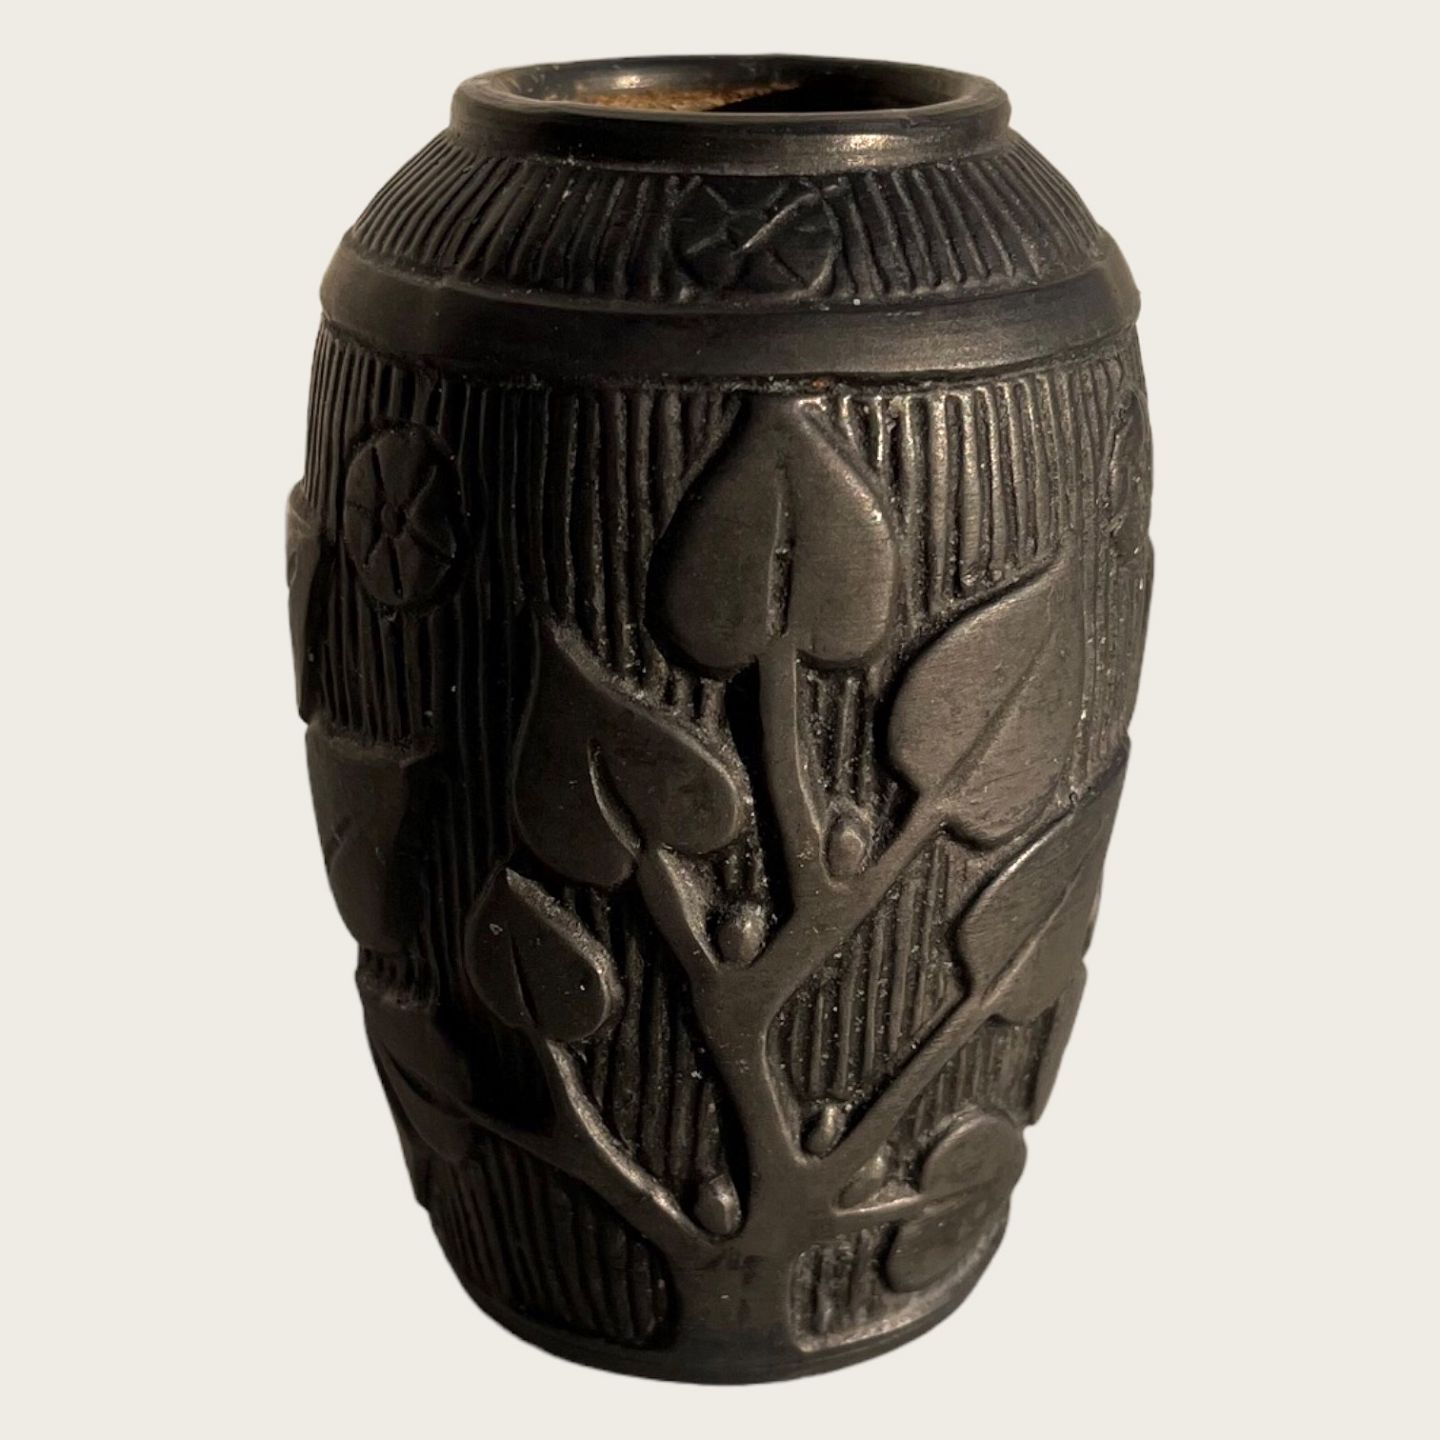 Olga Antik & Design - Bornholm ceramics * Hjorth * art nouveau vase * *DKK 500 - Bornholm ceramics Hjorth * art nouveau vase * *DKK 500